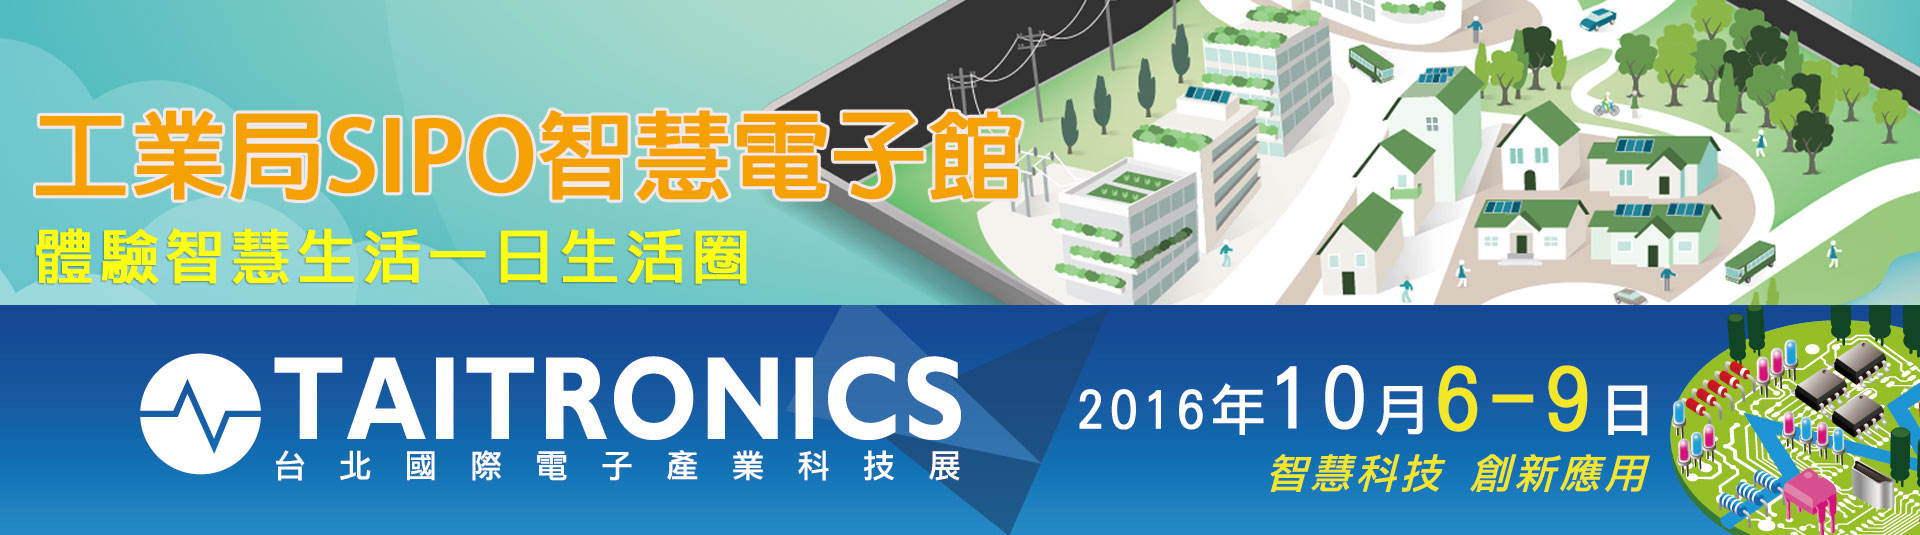 工業局SIPO智慧電子館，體驗智慧生活一日生活圈。台北國際電子展TAITRONICS展期2016年10月6-9日，智慧科技創新應用。